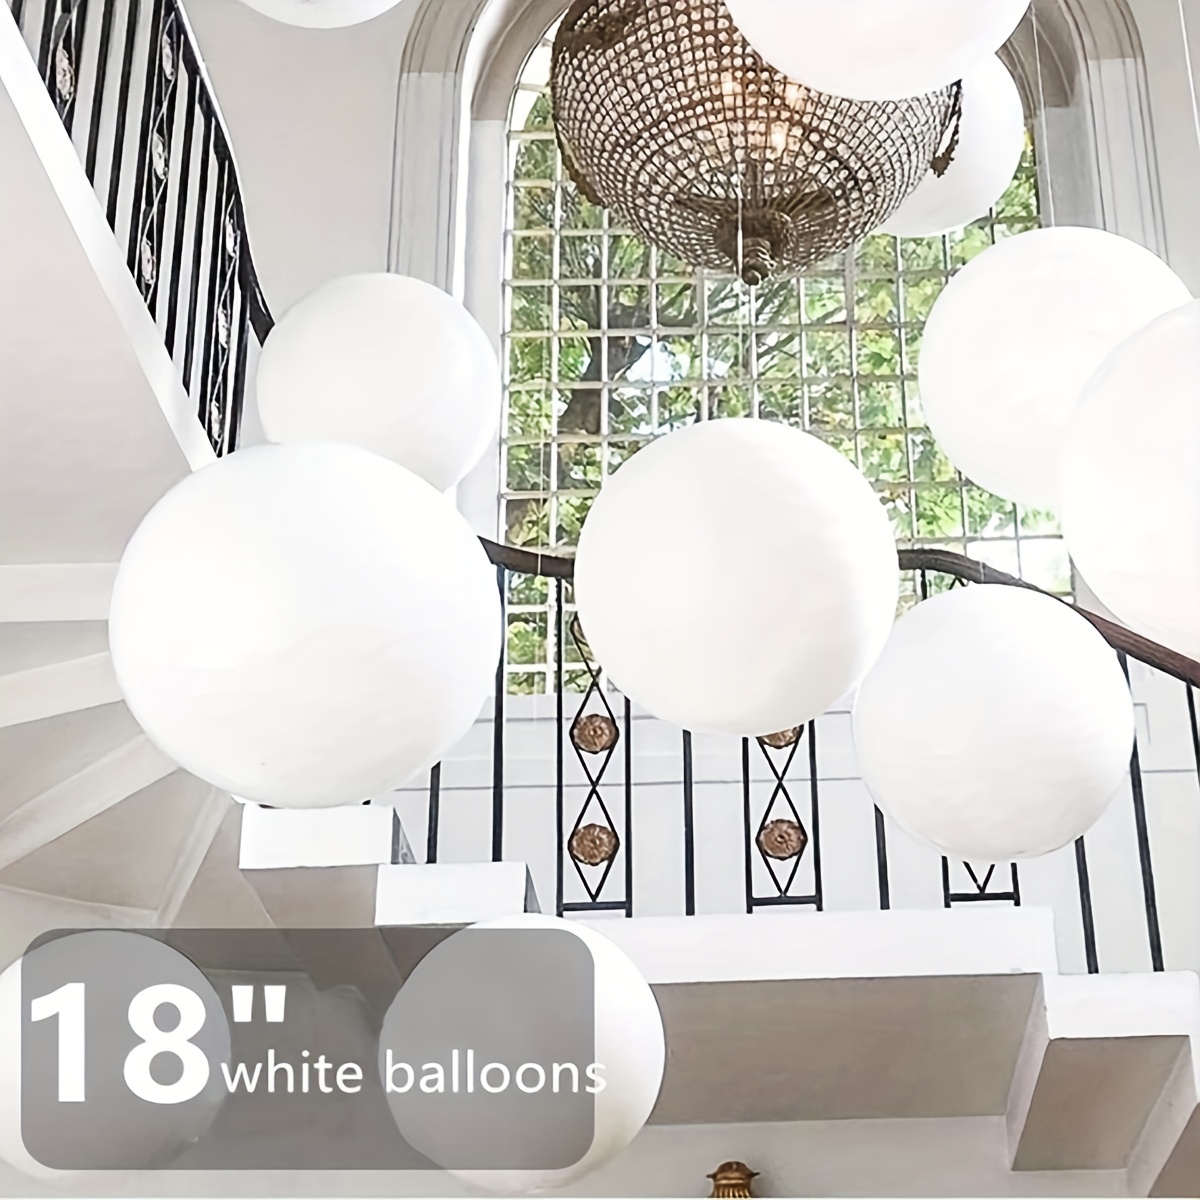  Globos gigantes blancos de 35.8 in – Neo LOONS 8 globos grandes  blancos gigantes redondos para bodas, baby shower, Navidad, fiesta de  cumpleaños y decoración de eventos : Juguetes y Juegos